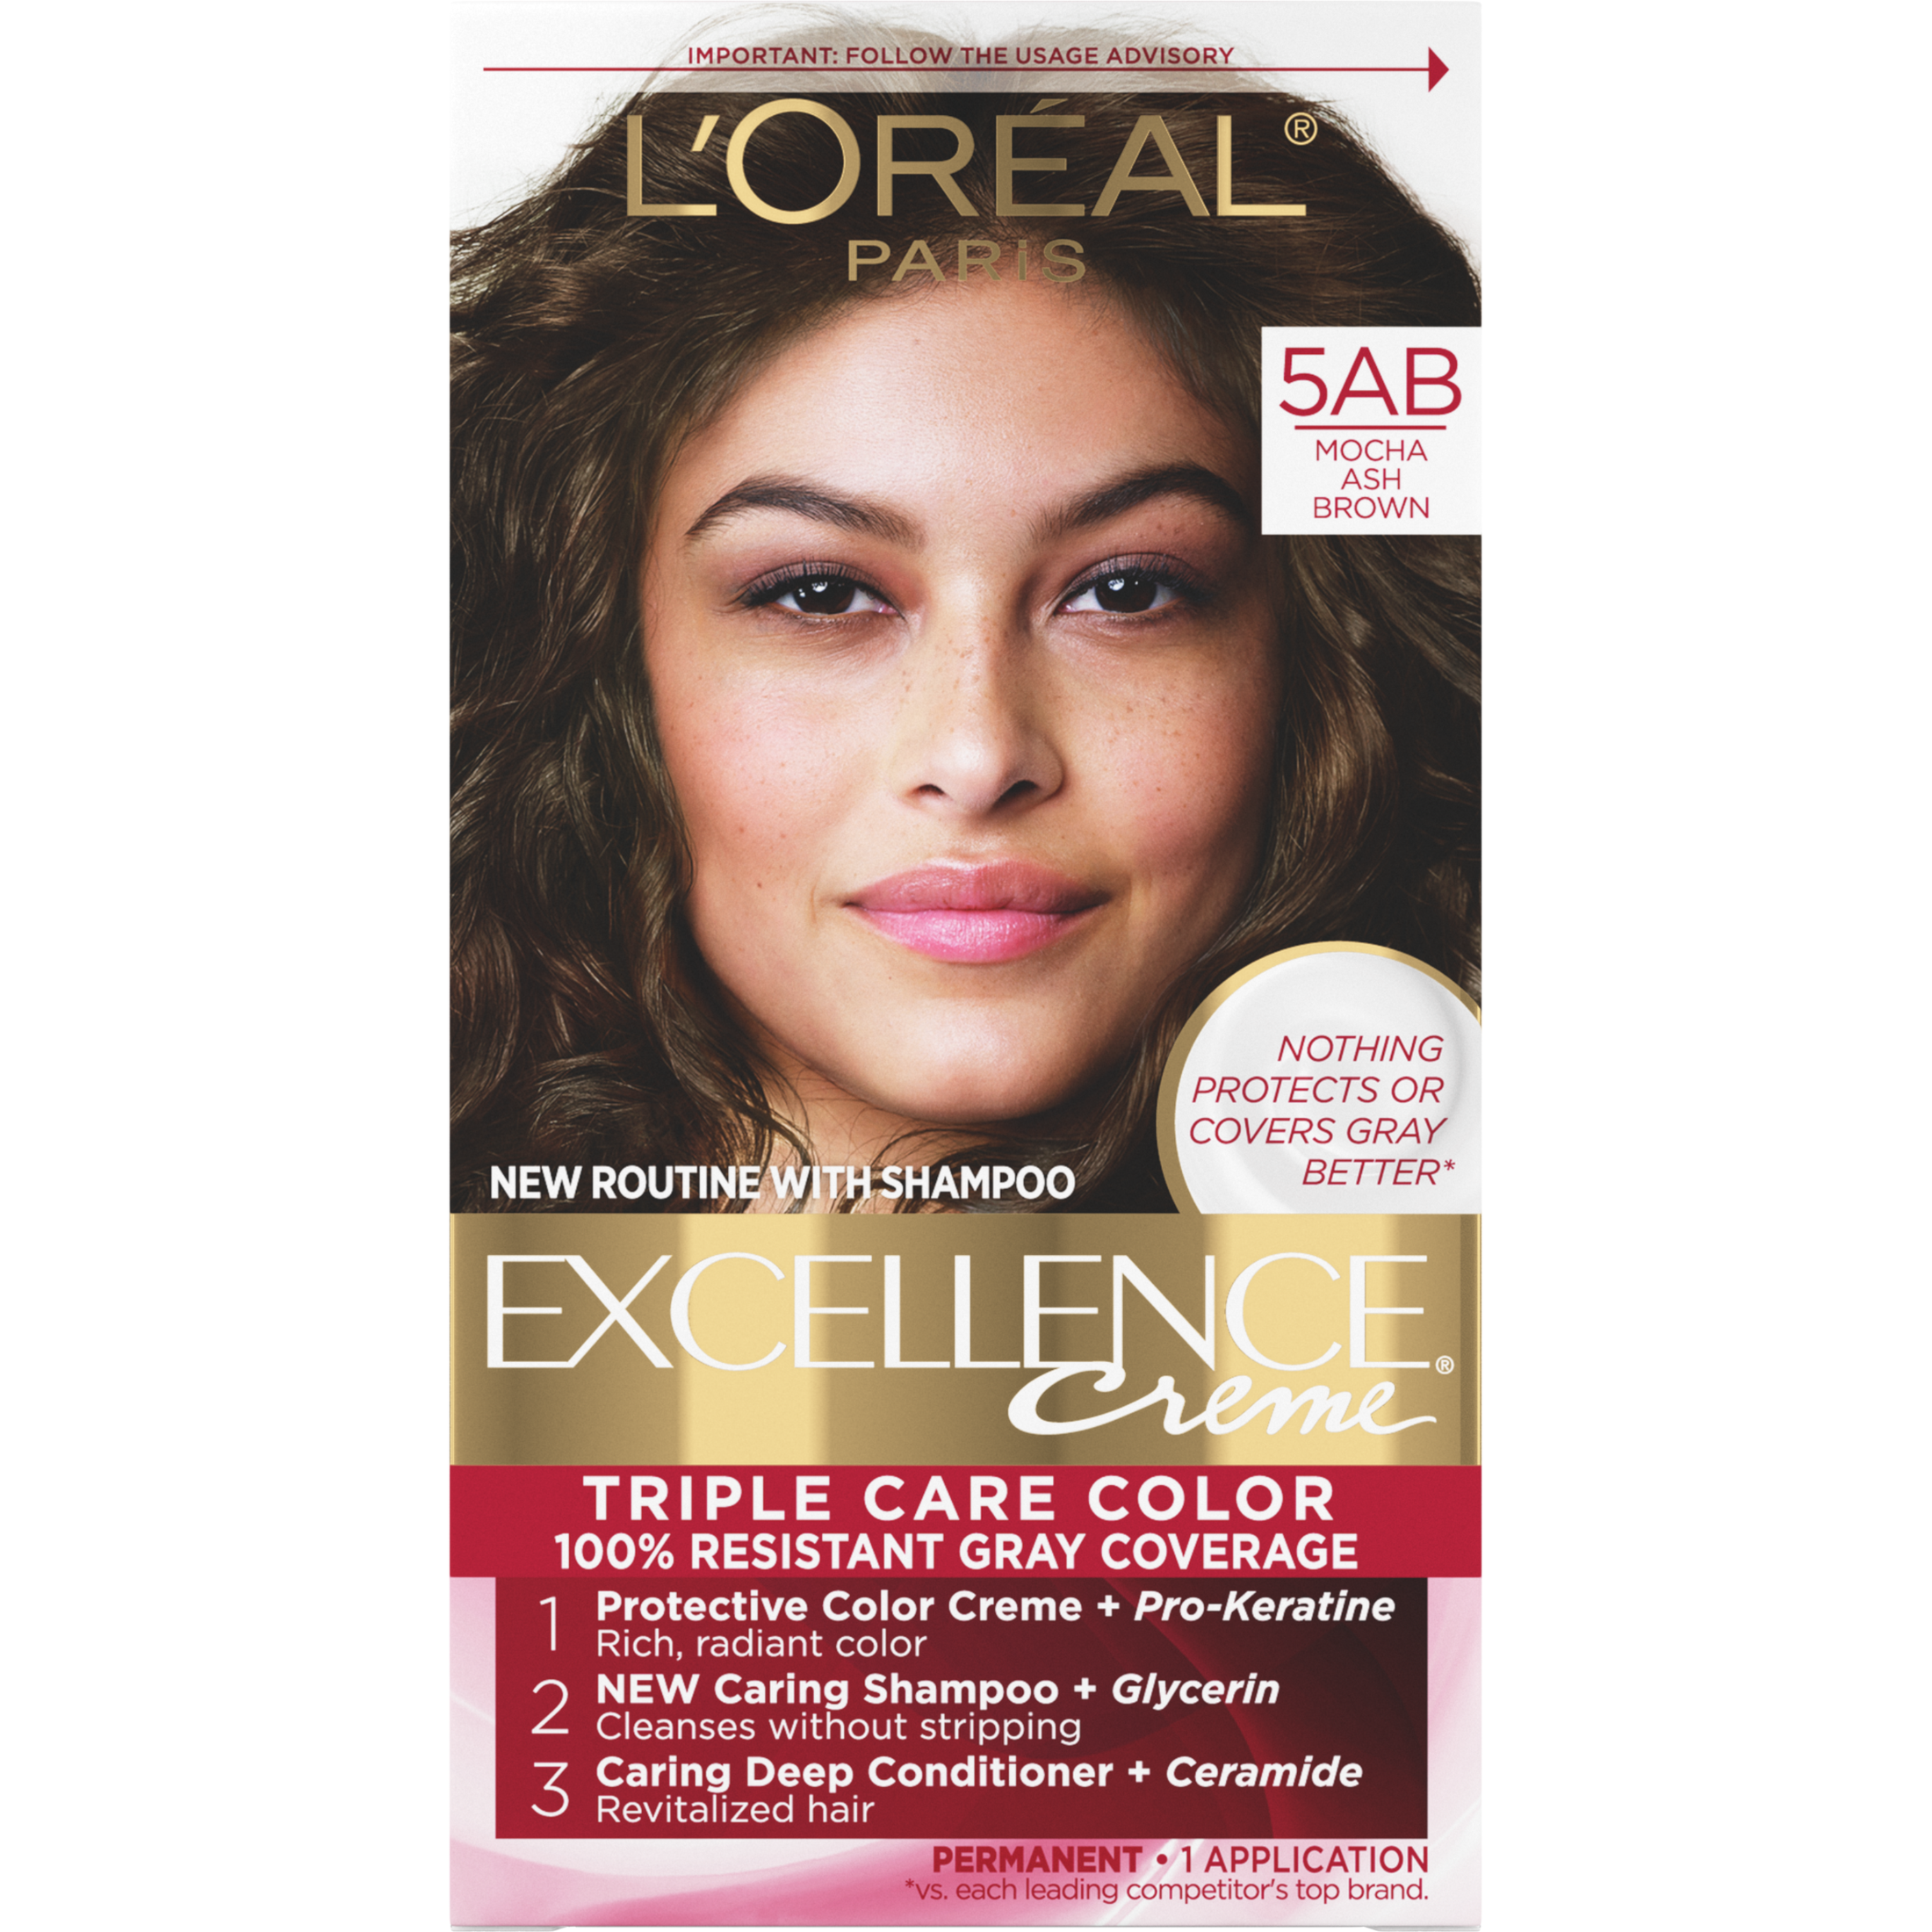 L'Oreal Paris Excellence Creme Permanent Hair Color, 5AB Mocha Ash Brown - image 1 of 8